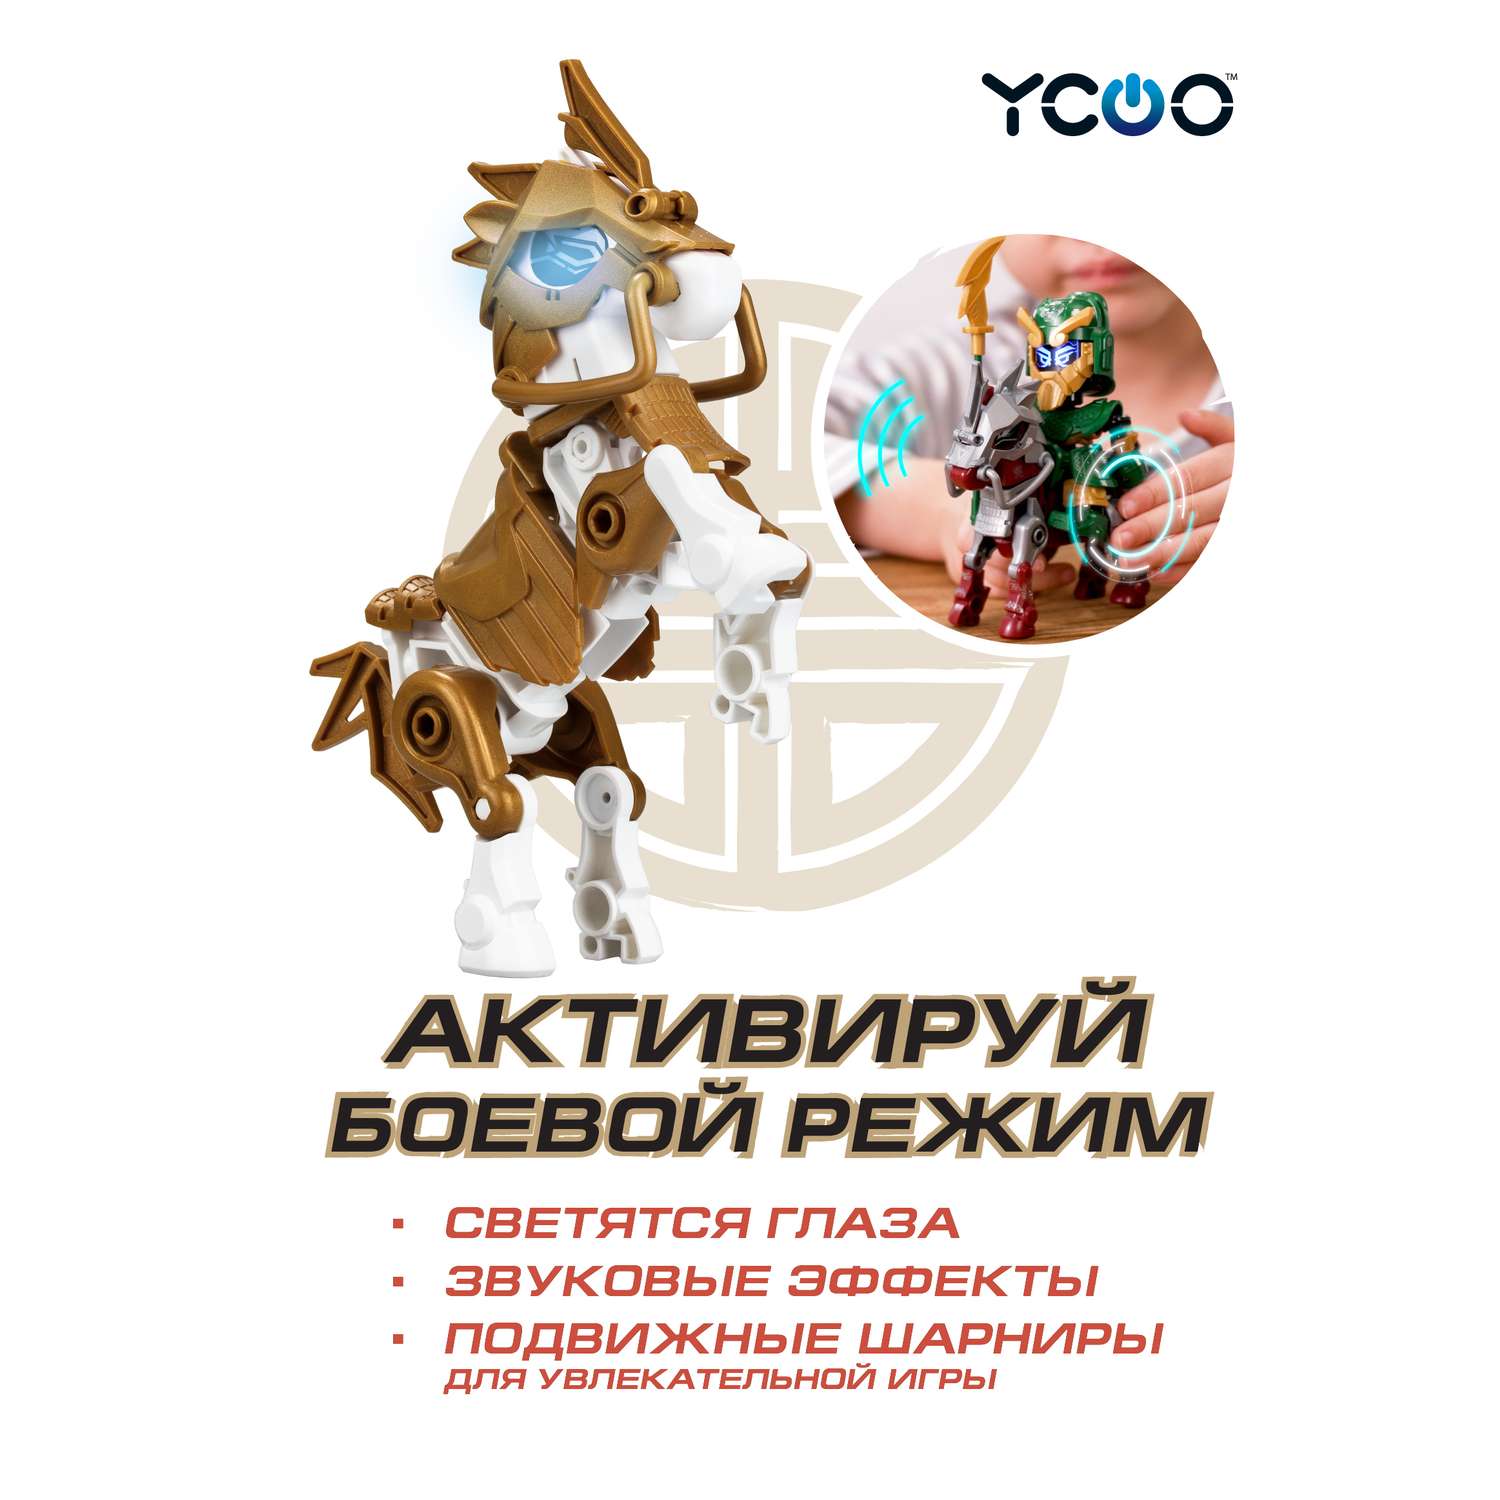 Робот YCOO Боевой одиночный - Золотой боевой конь - фото 3